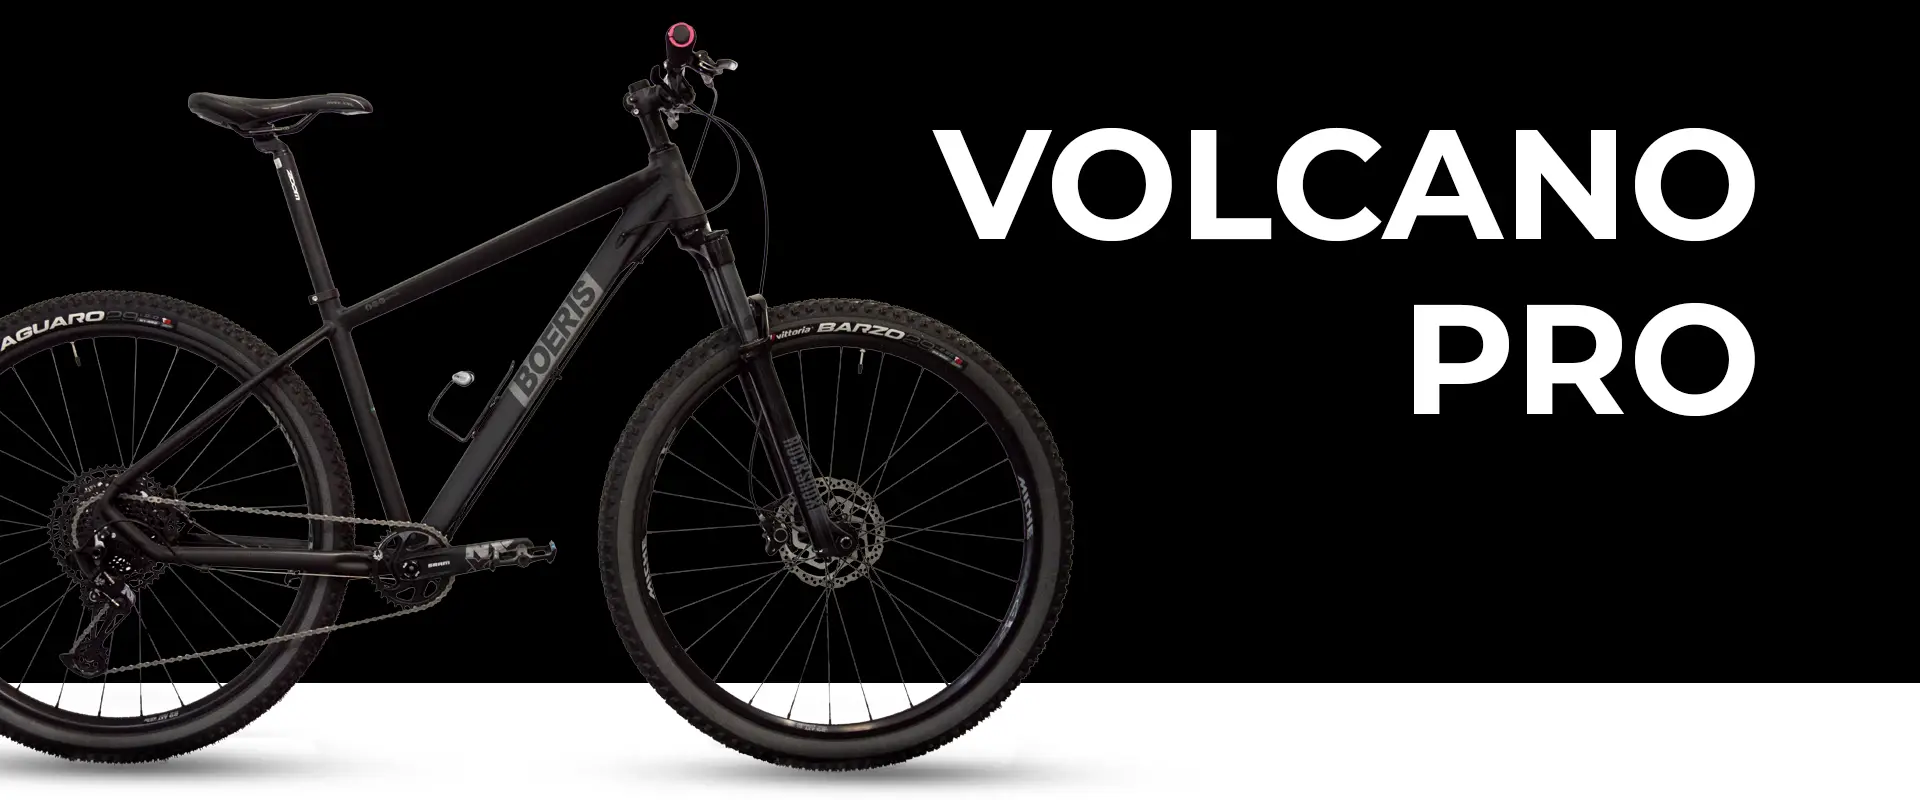 Volcano Pro colore nero Boeris Bikes Torino con sfondo nero